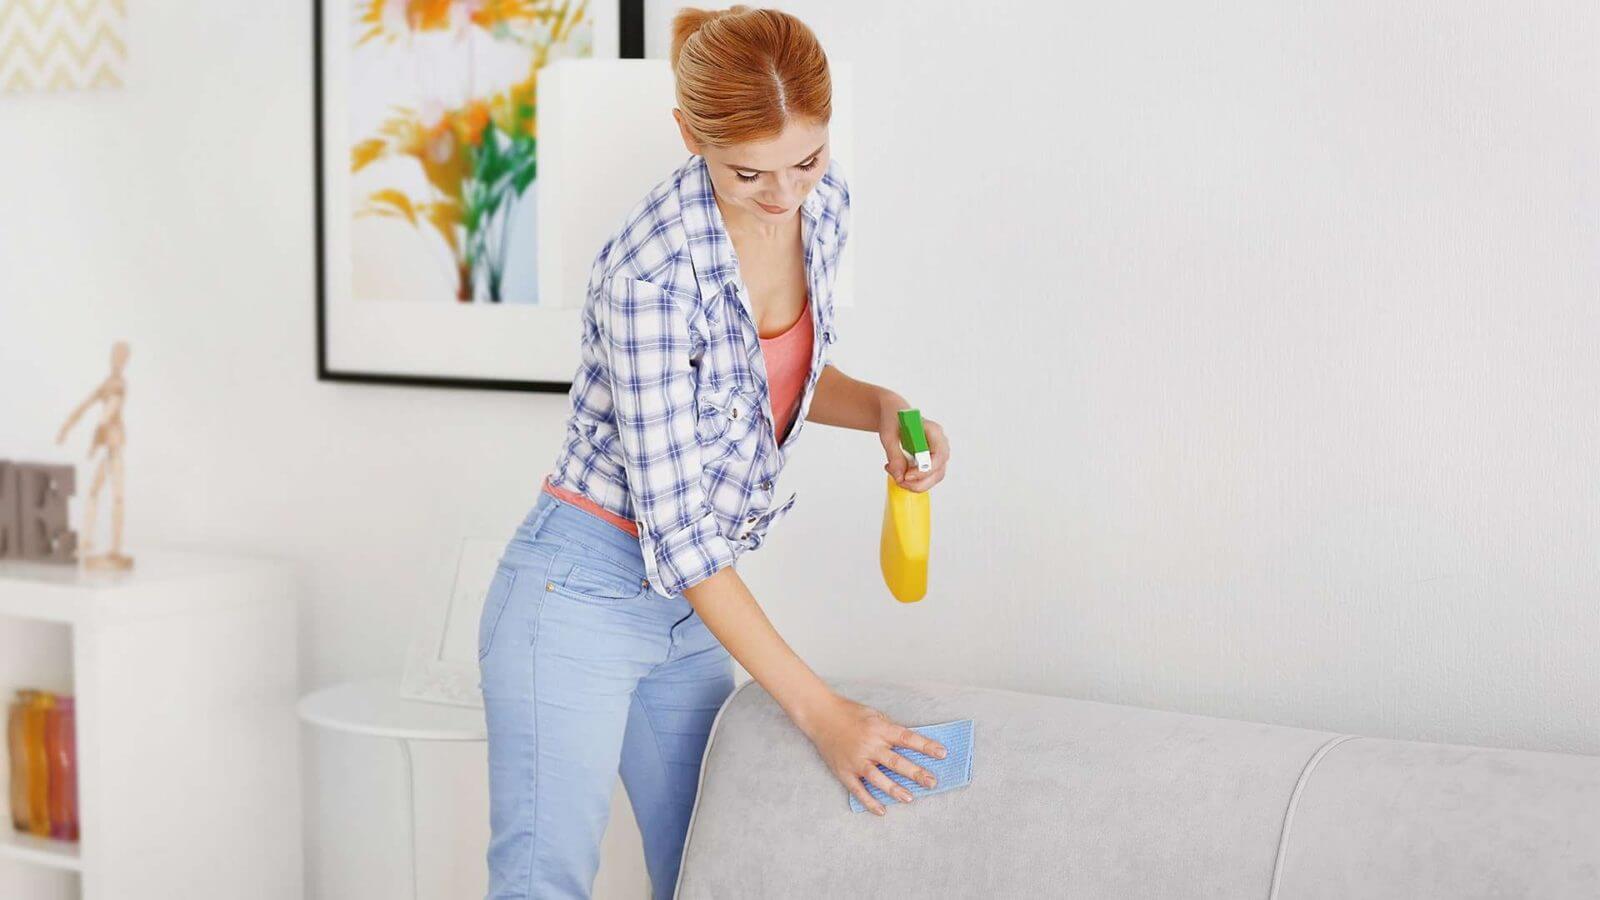 Мытье мягкой мебели в домашних условиях